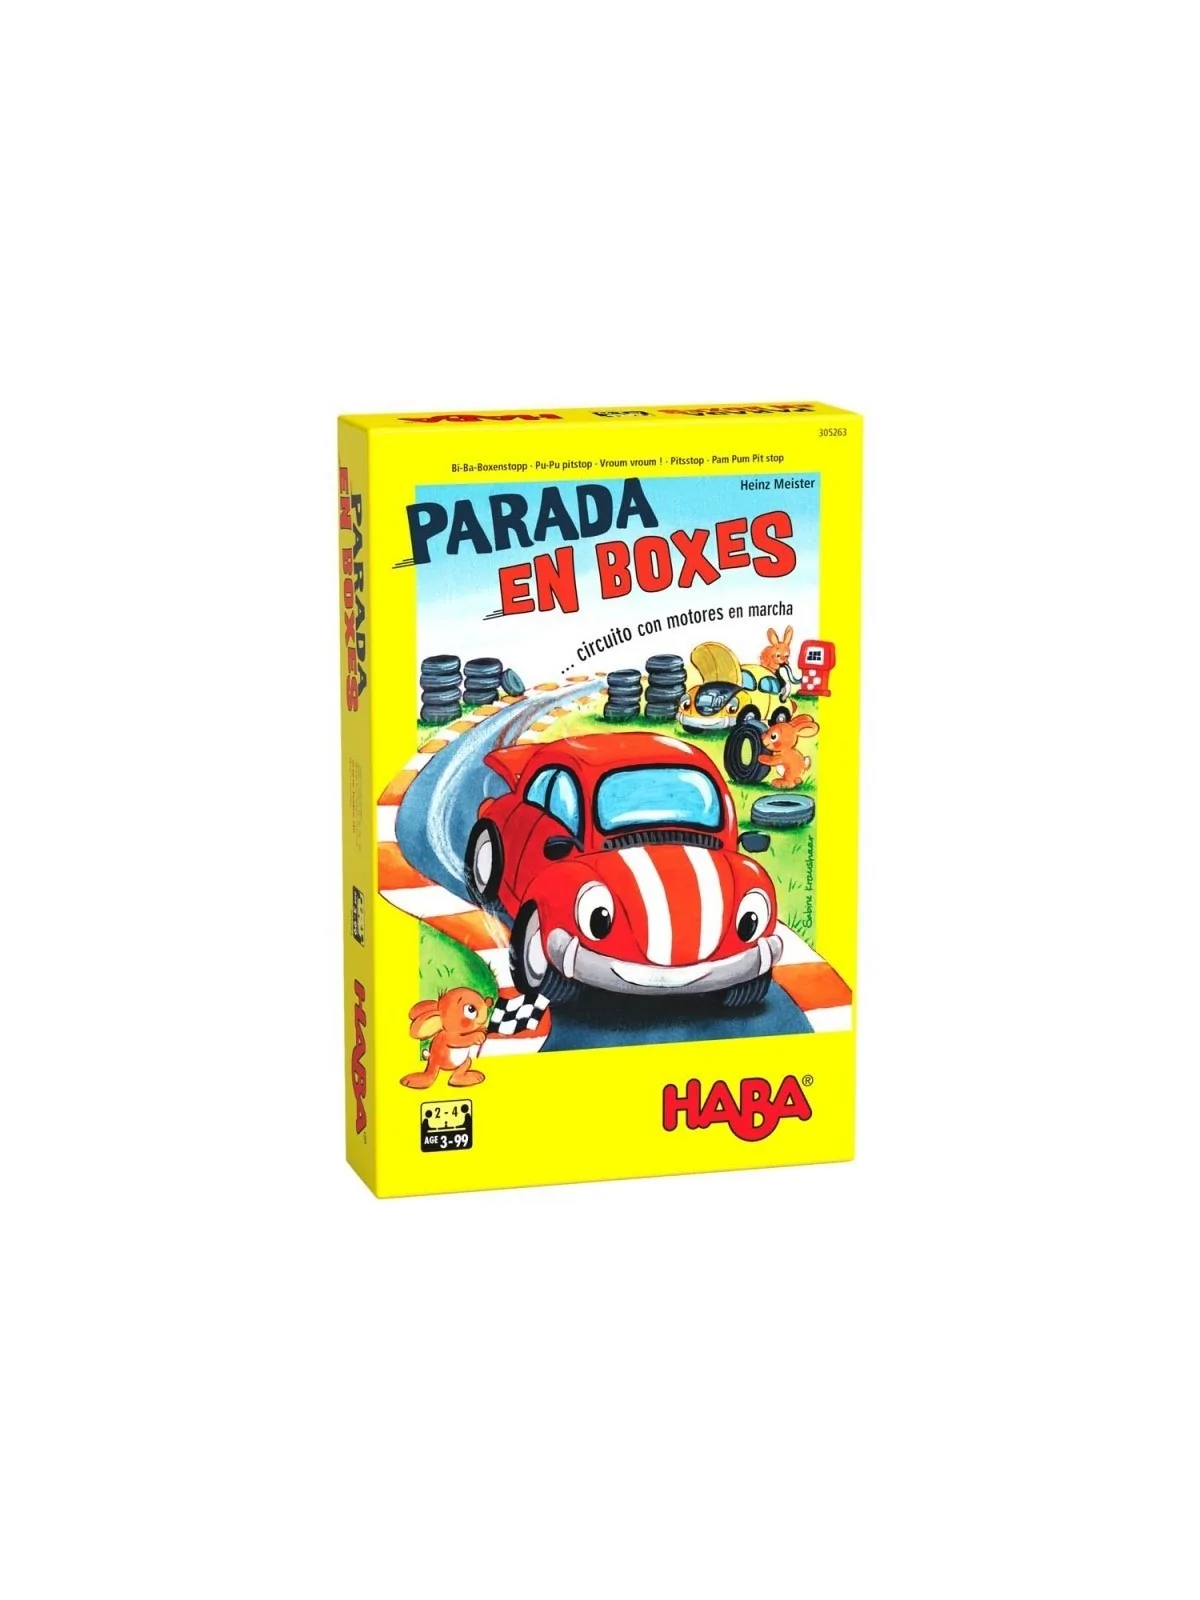 Comprar Parada en Boxes barato al mejor precio 12,59 € de Haba